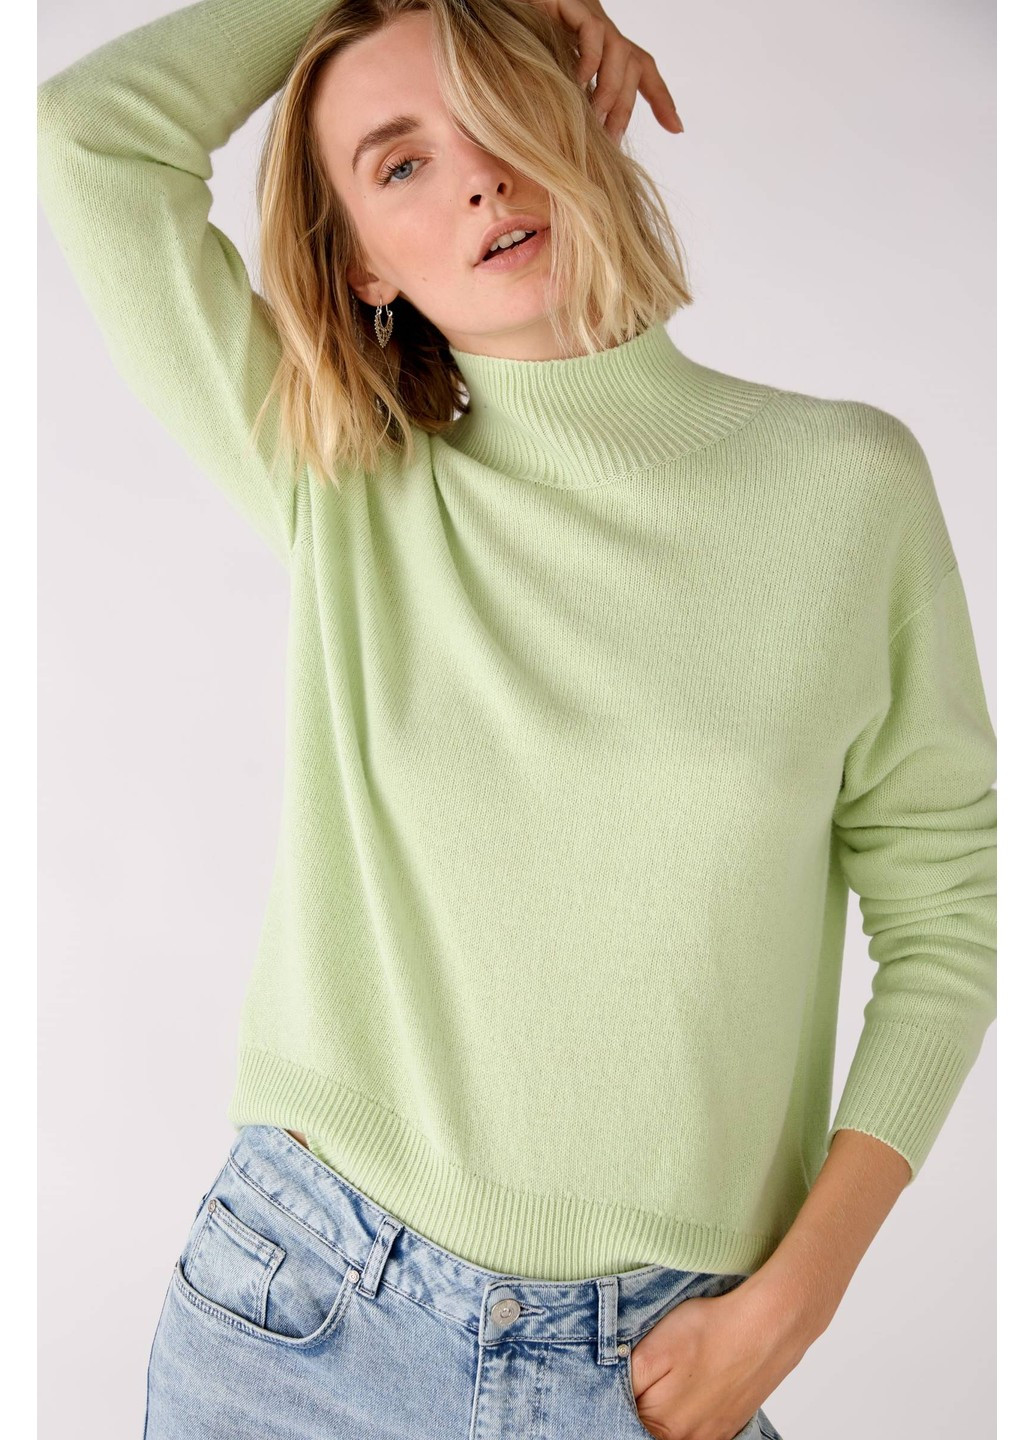 Салатовый демисезонный женский свитер салатовый джемпер Oui